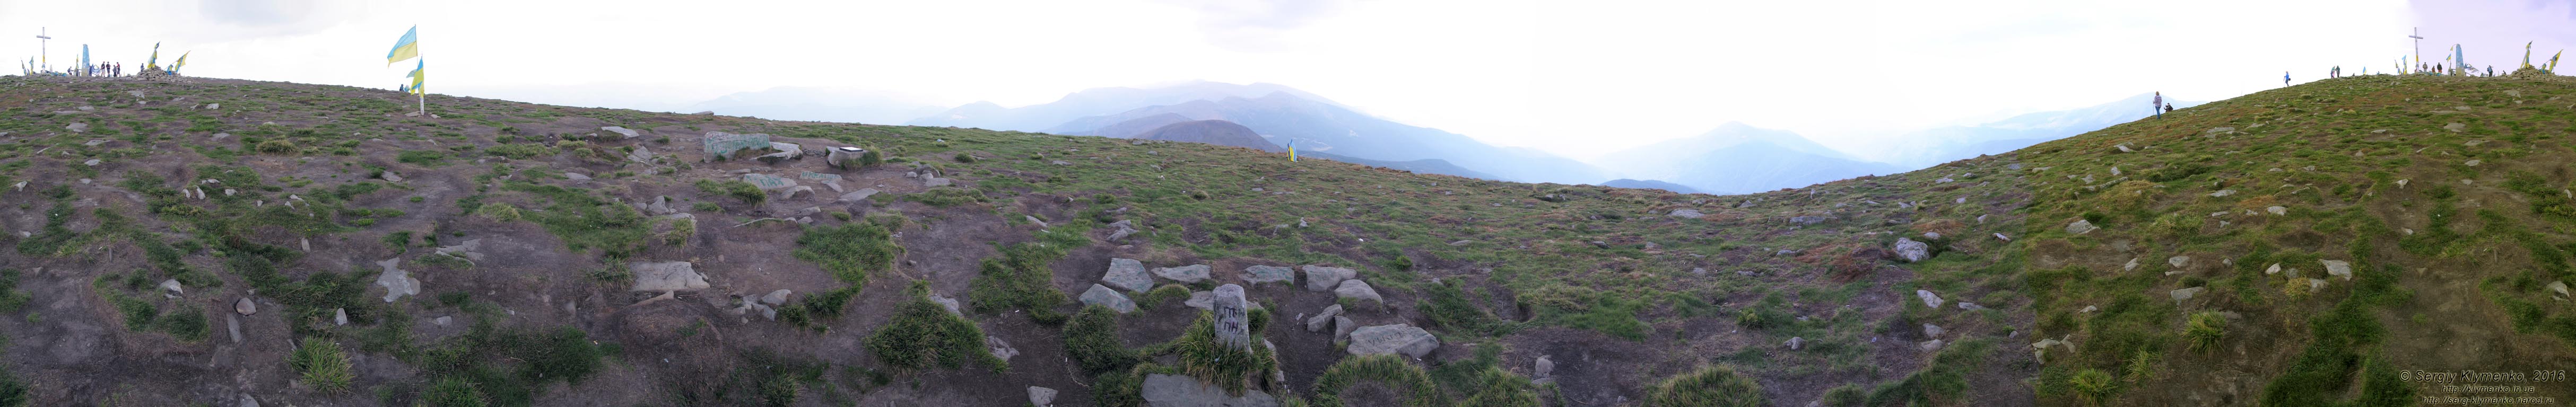 Фото Карпат. Панорама (~360°) на вершине горы Говерла. Высота ~2061 метров над уровнем моря.